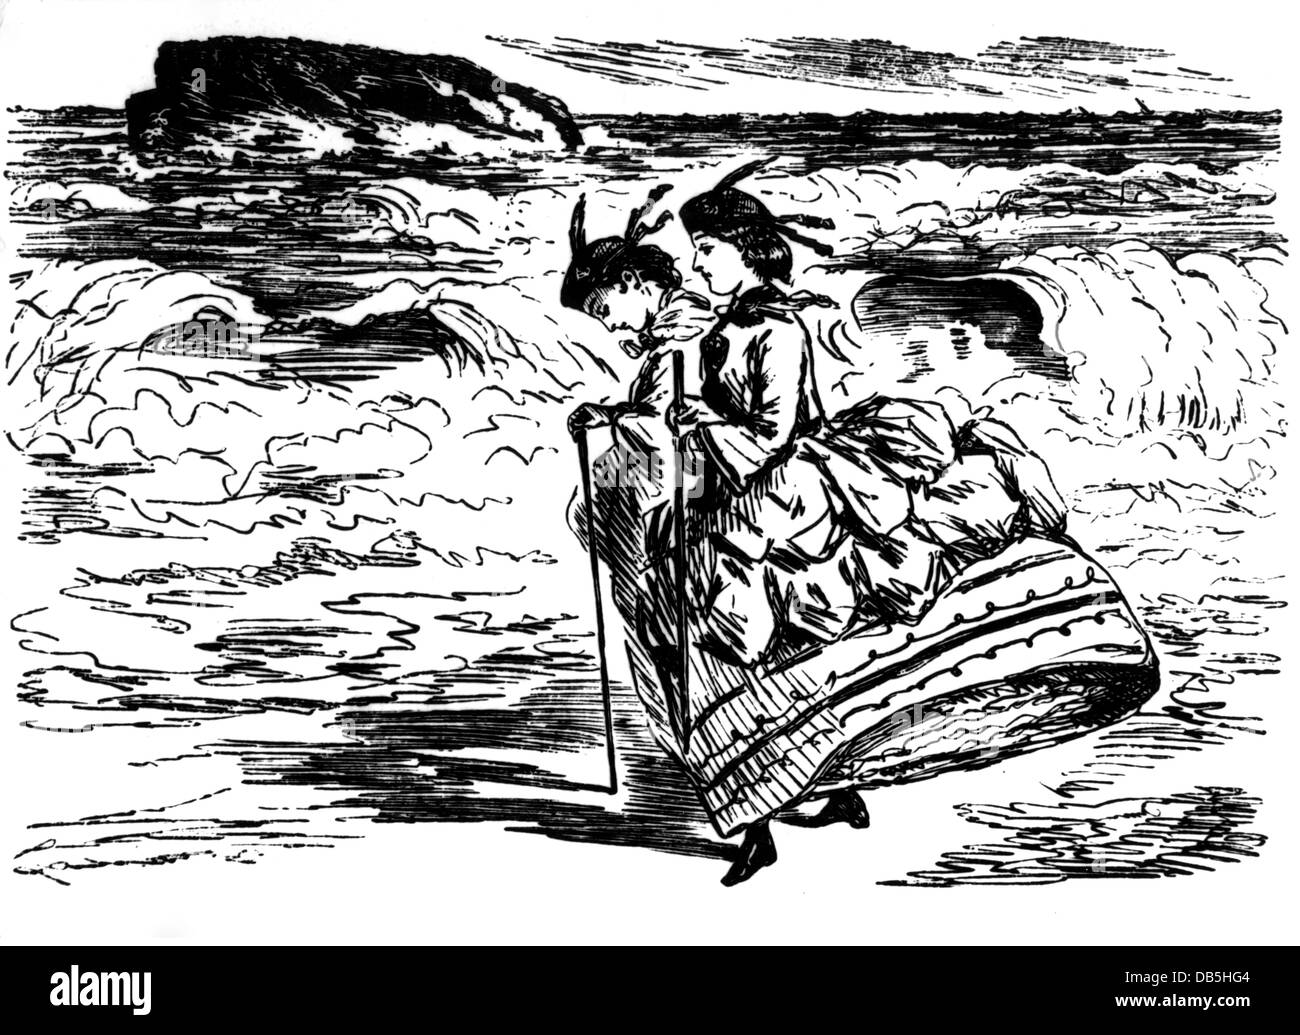 Baignade, plage, 'à la plage de Biarritz', gravure en bois de John Leech, 'Punch', 1865, , droits-supplémentaires-Clearences-non disponible Banque D'Images